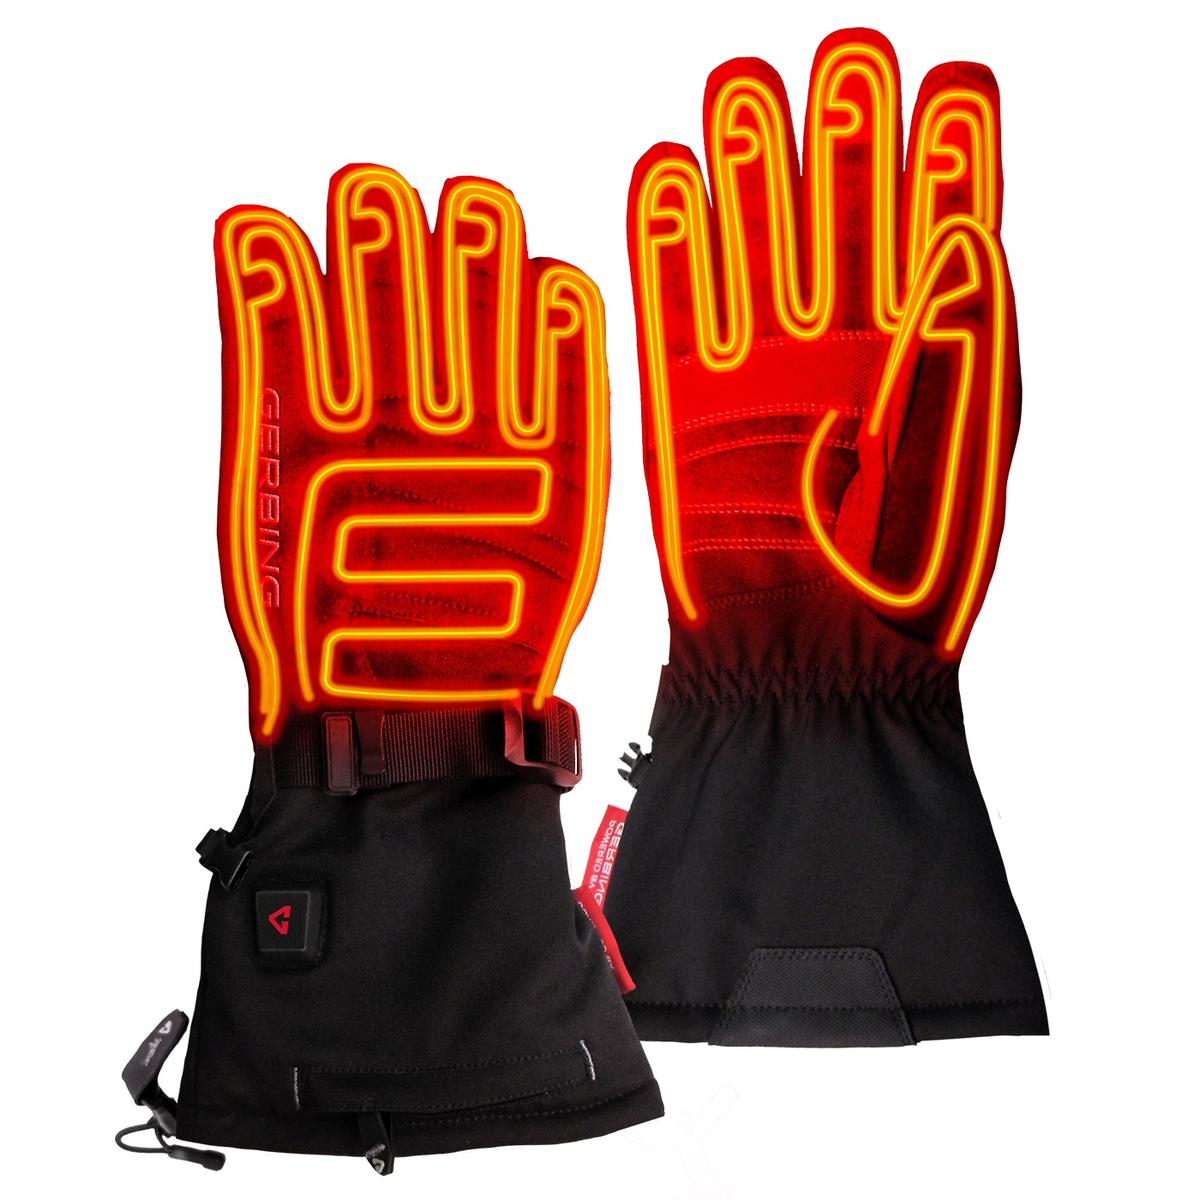 Gerbing Men's 7V Battery Heated S7 Gloves, Black